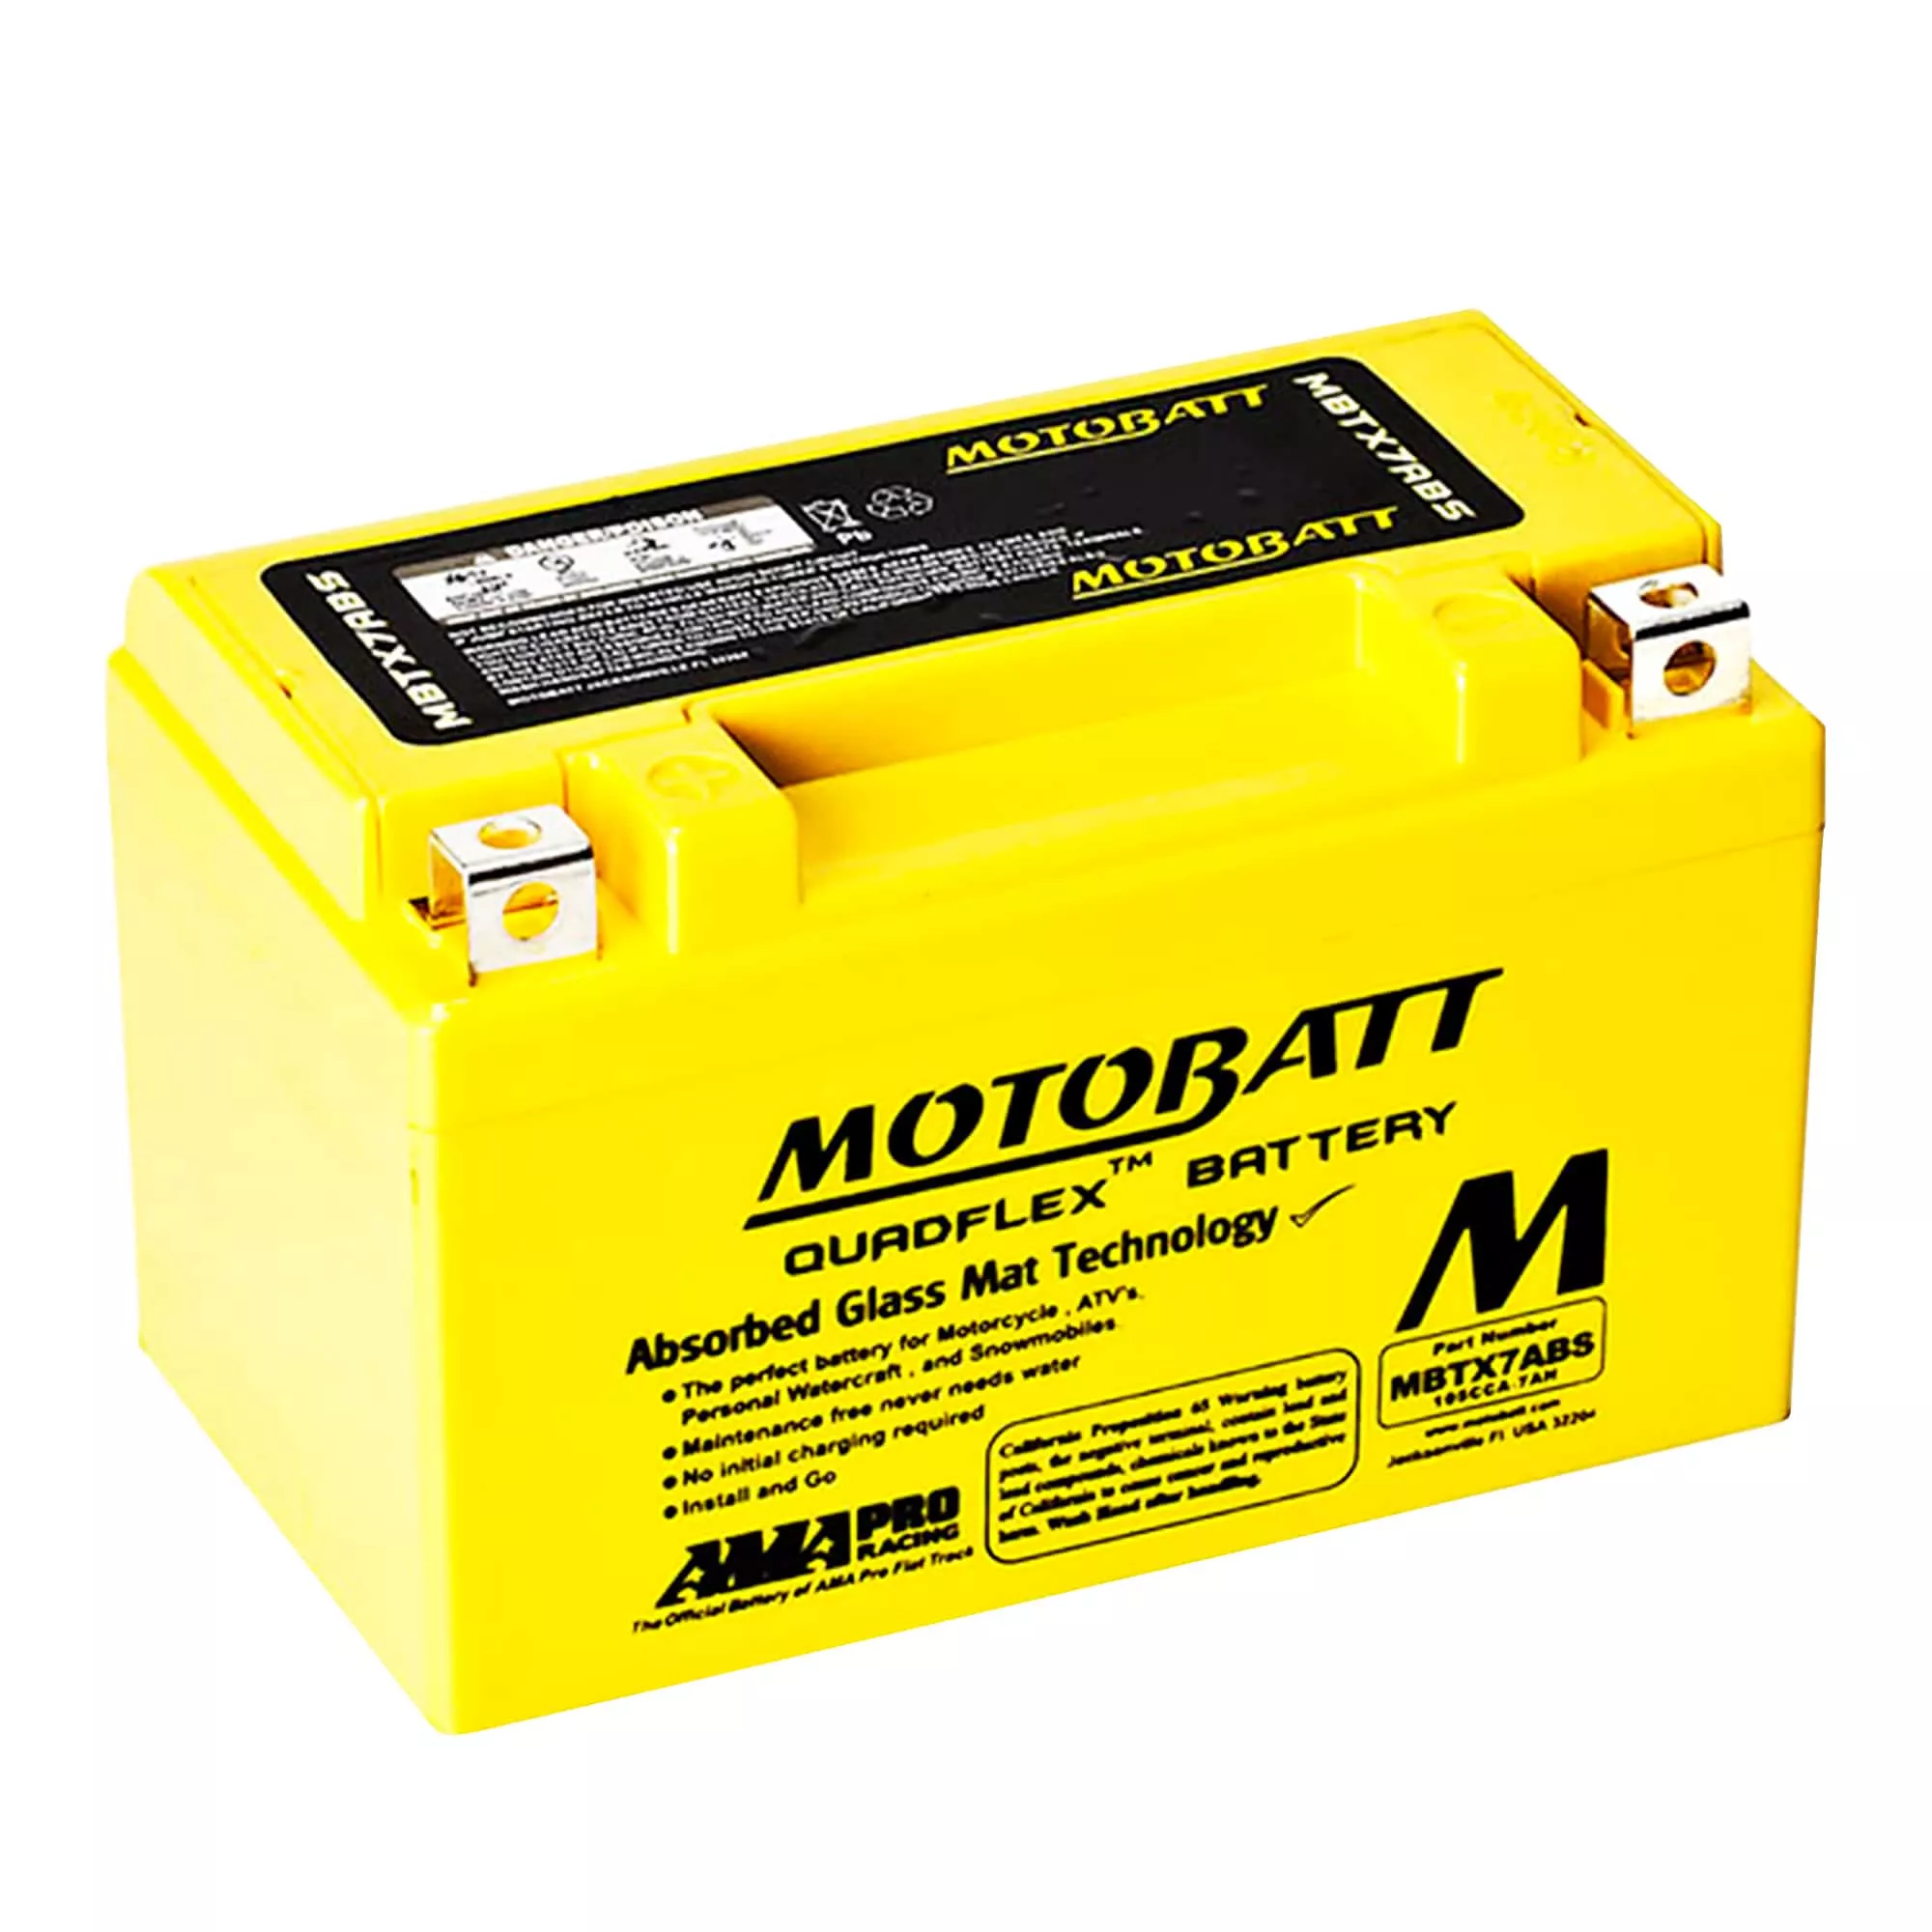 Мото акумулятор MOTOBATT залитий та заряджений AGM 7Ah 105A Аз (MBTX7ABS)